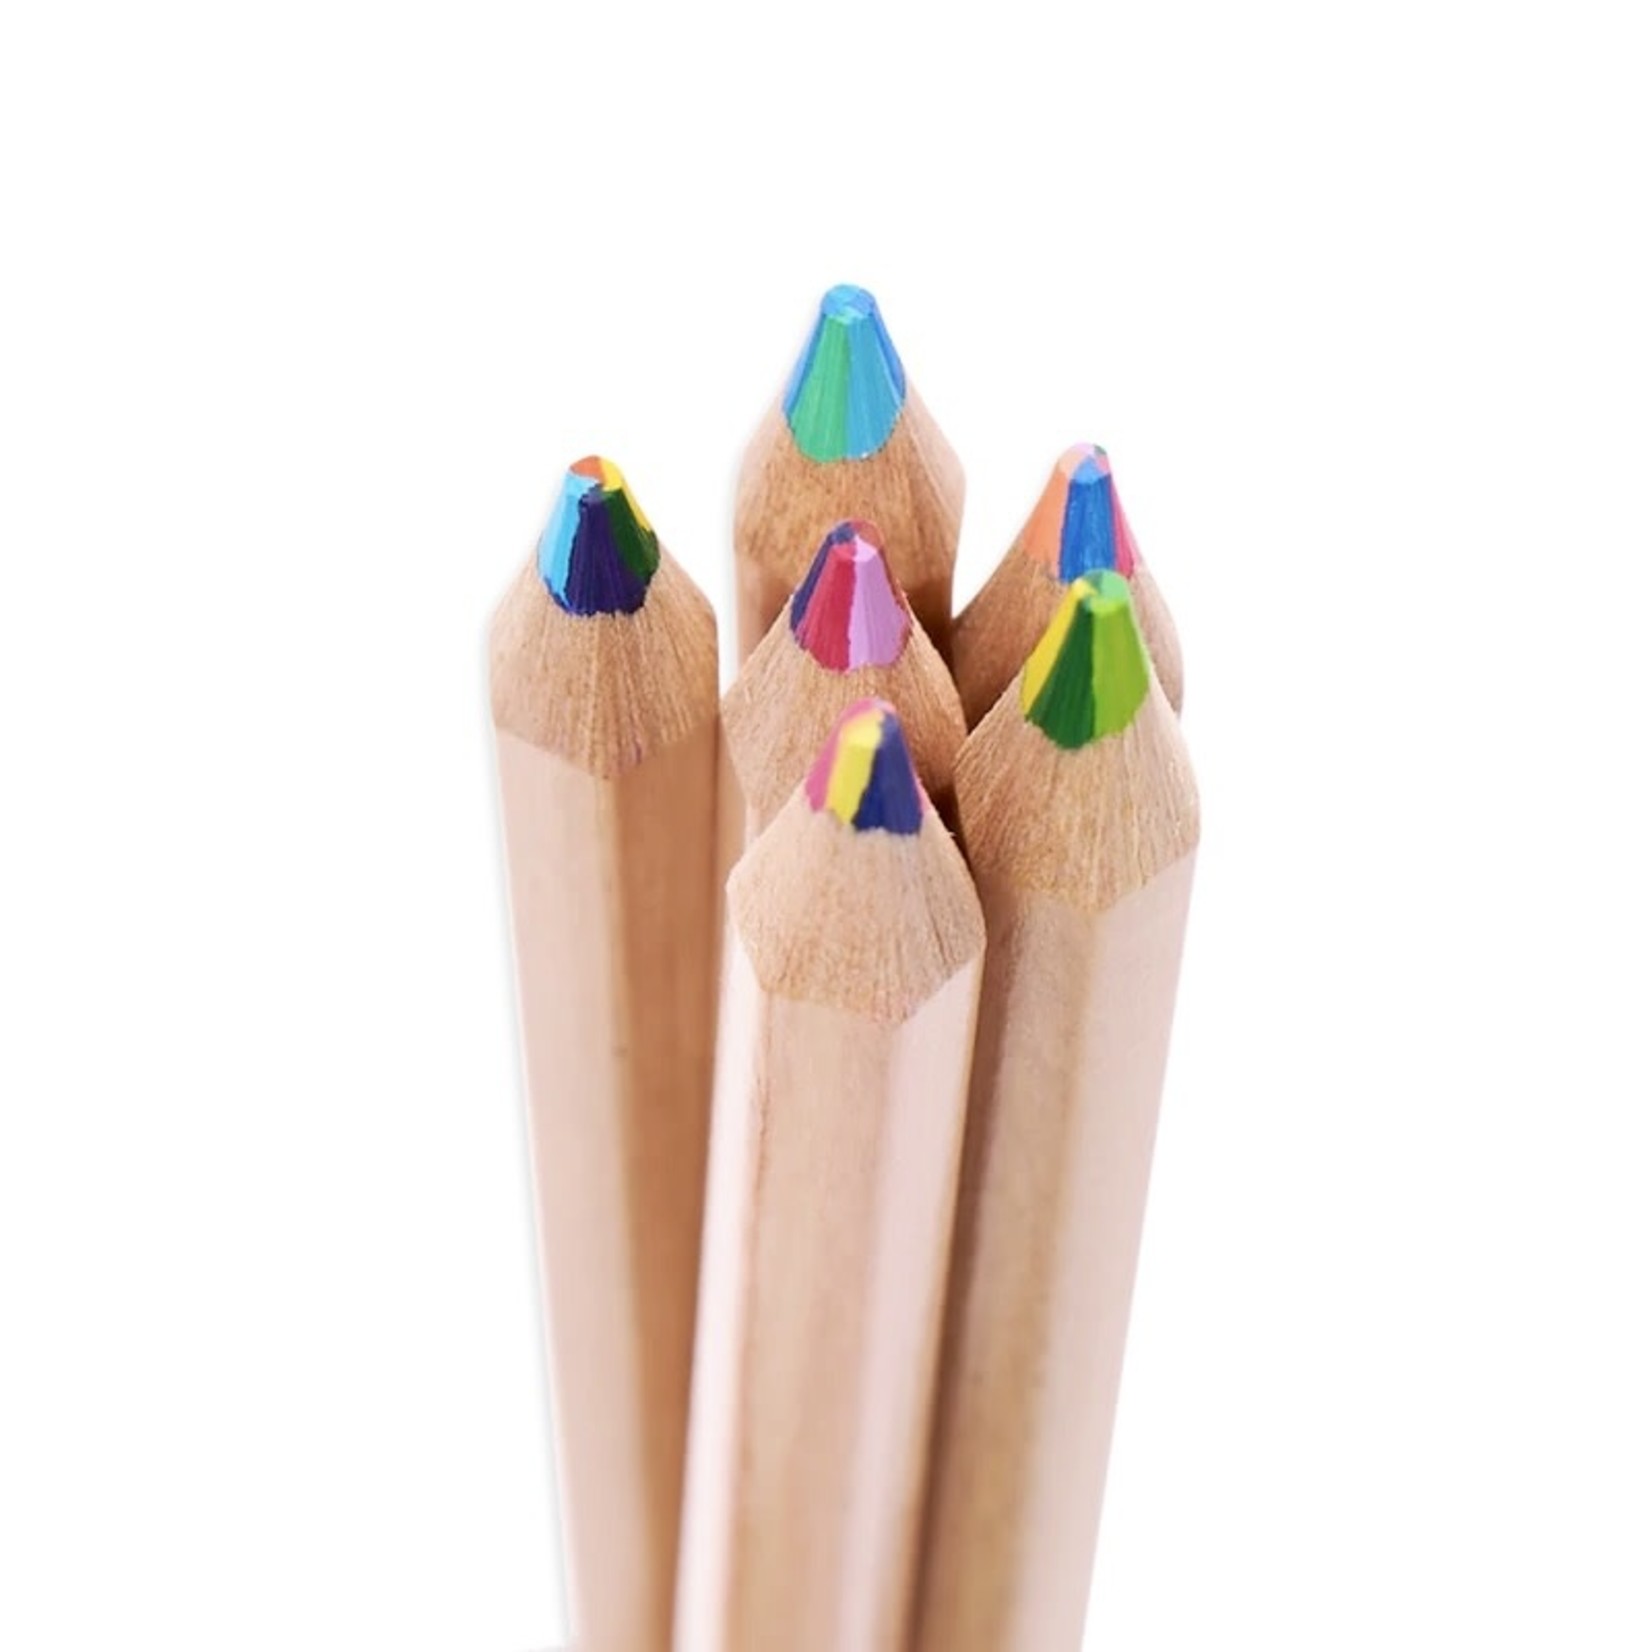 Kaleidoscope Multi-Colored Pencils